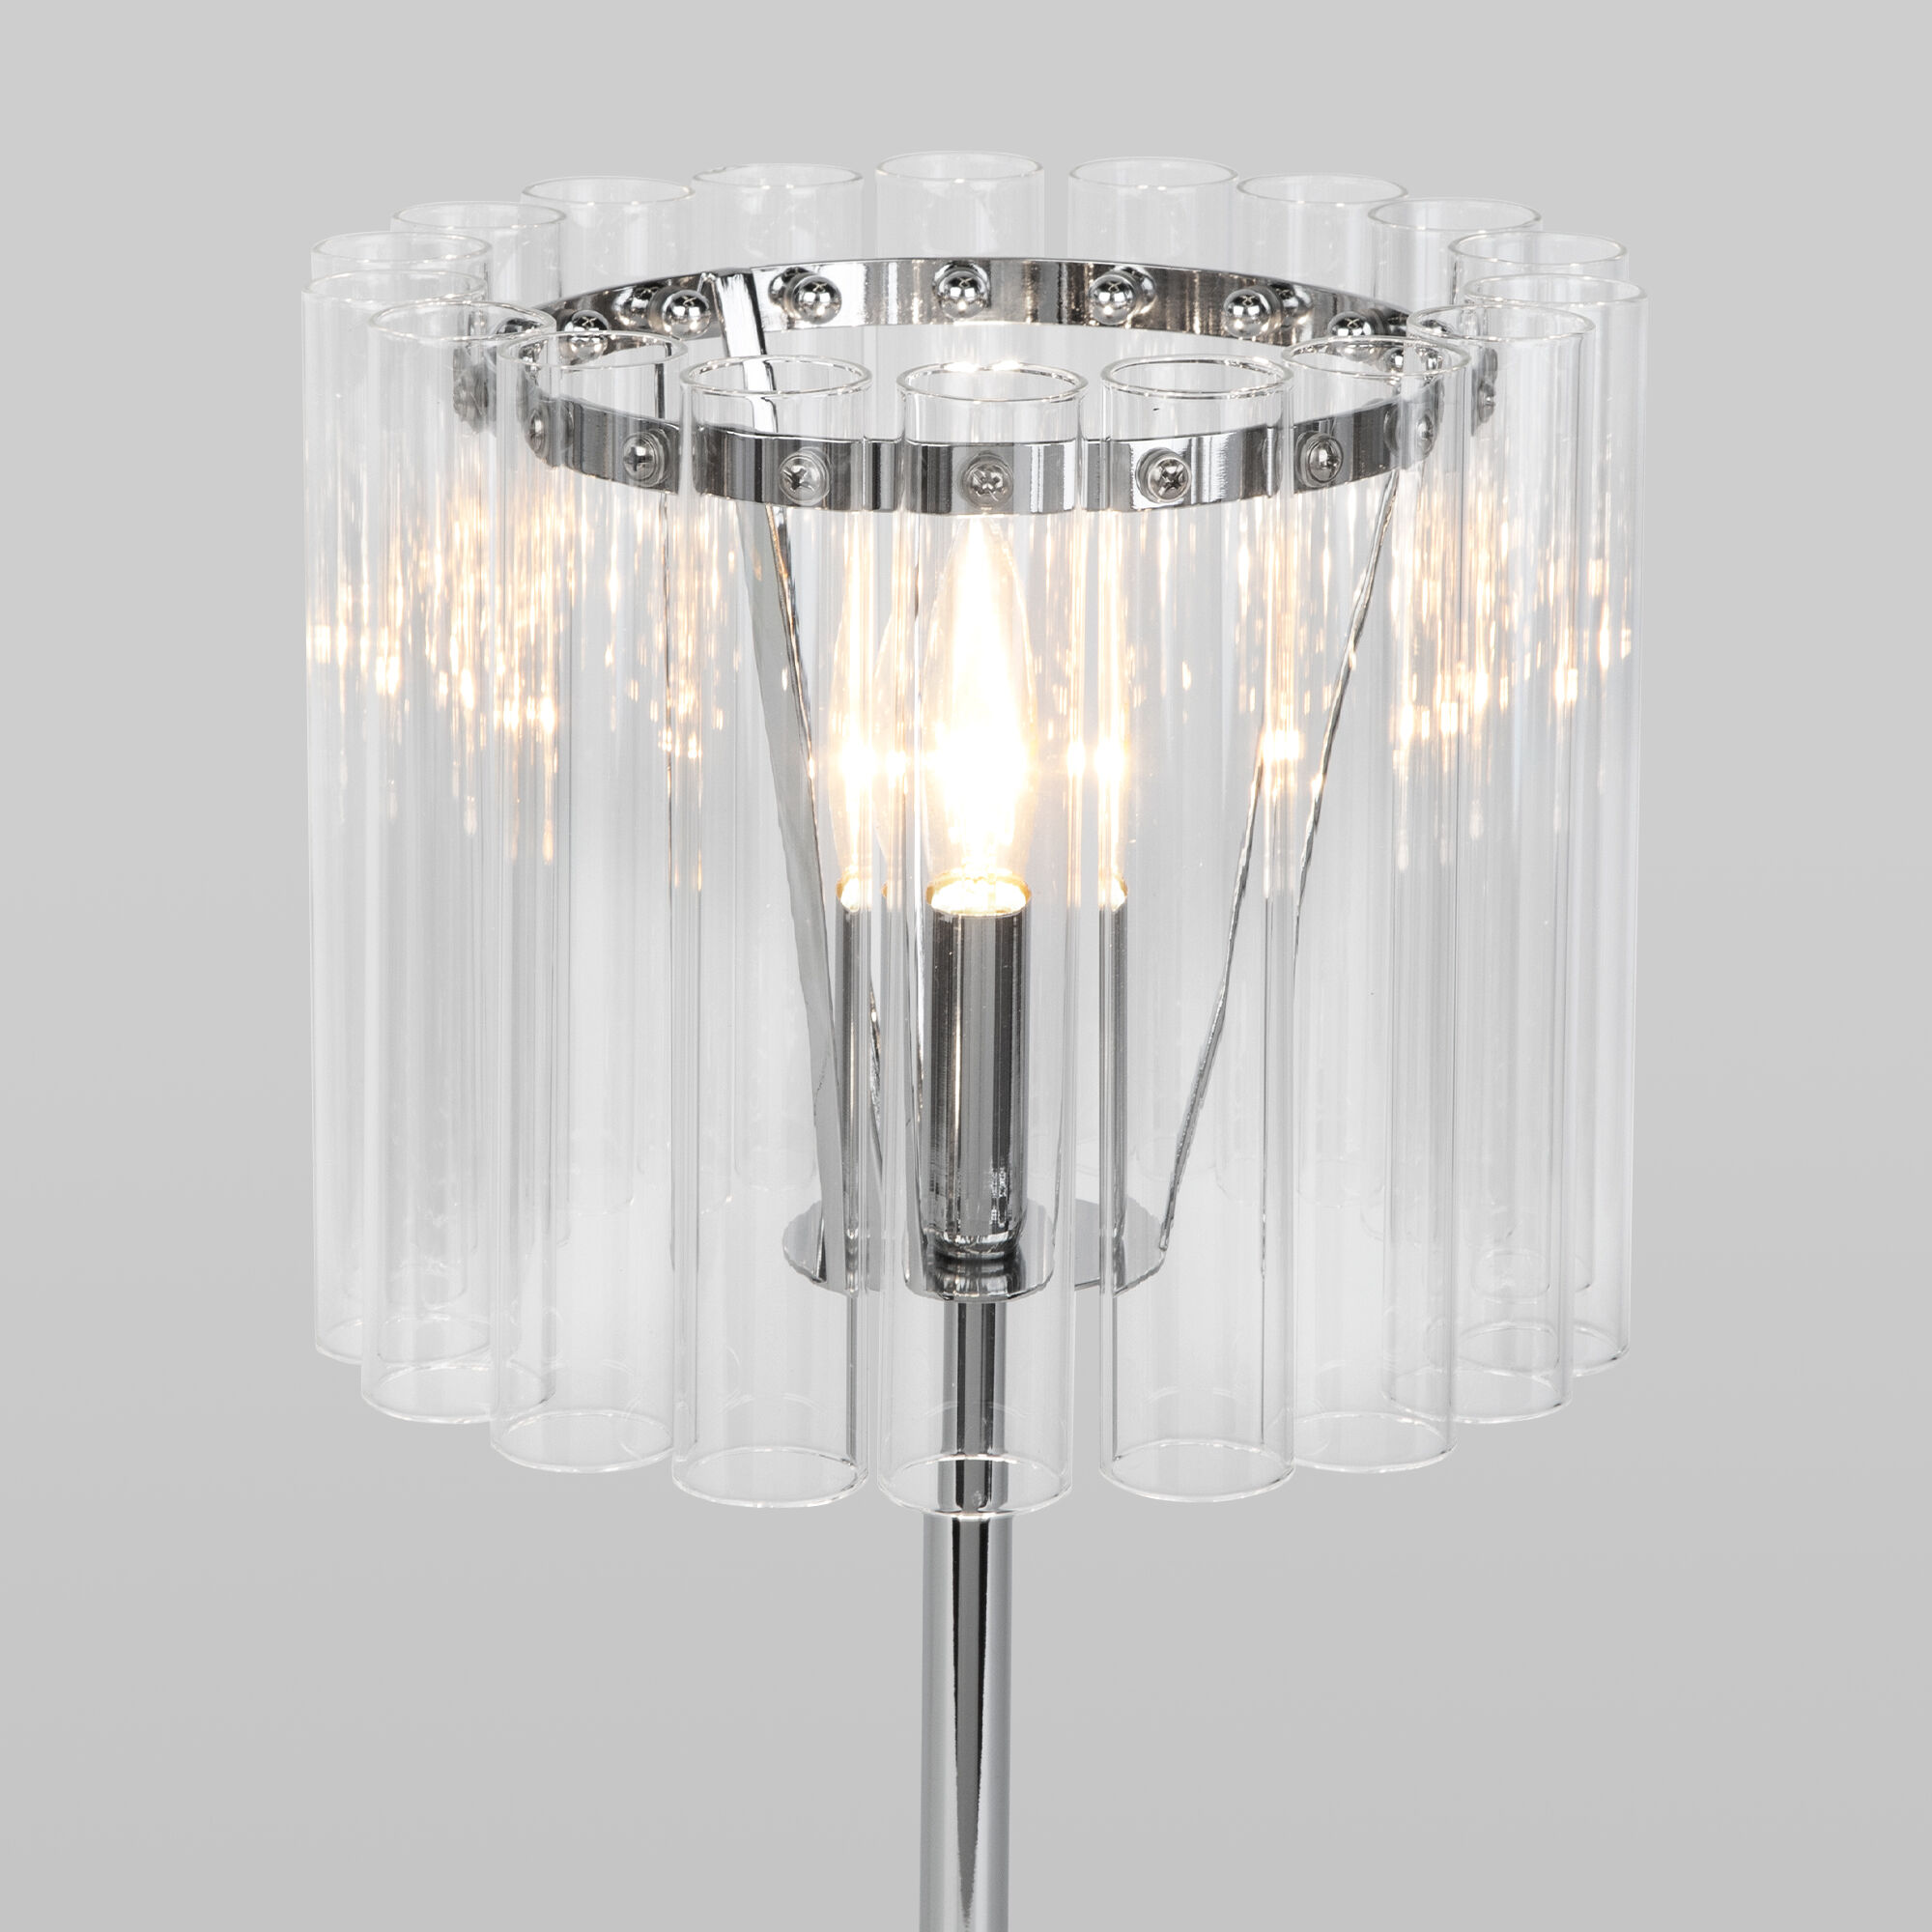 Настольный светильник со стеклянным плафоном Bogate's Flamel 01117/1 хром. Фото 2